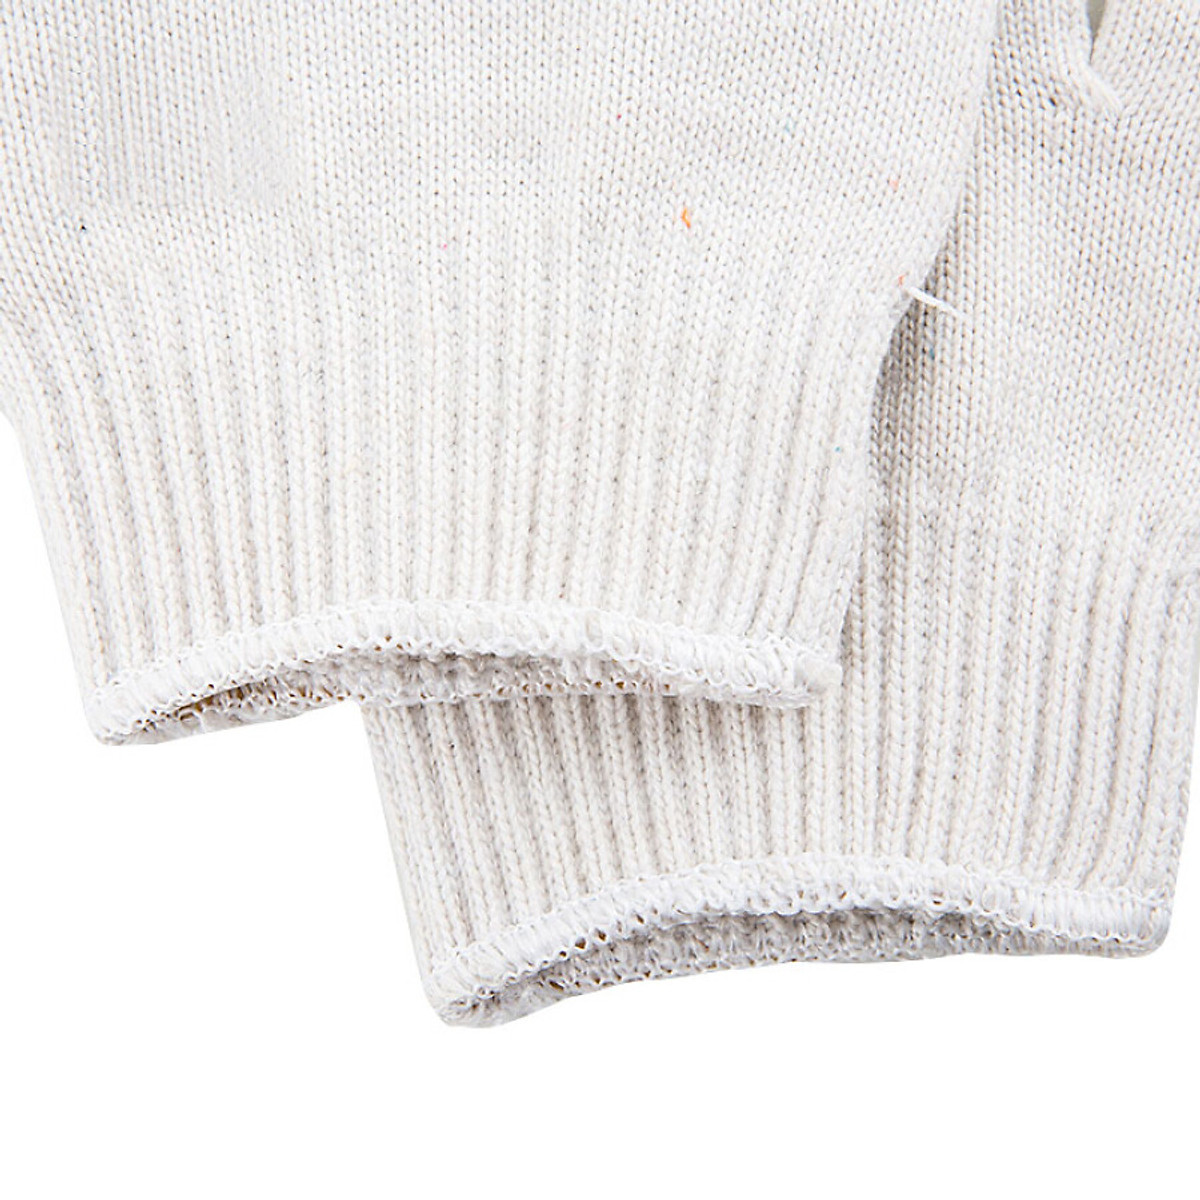 Bộ 10 bao tay len bảo hộ lao động màu trắng - viền màu ngẫu nhiên ( loại dày 50g / 1 đôi ) tiện lợi cao cấp